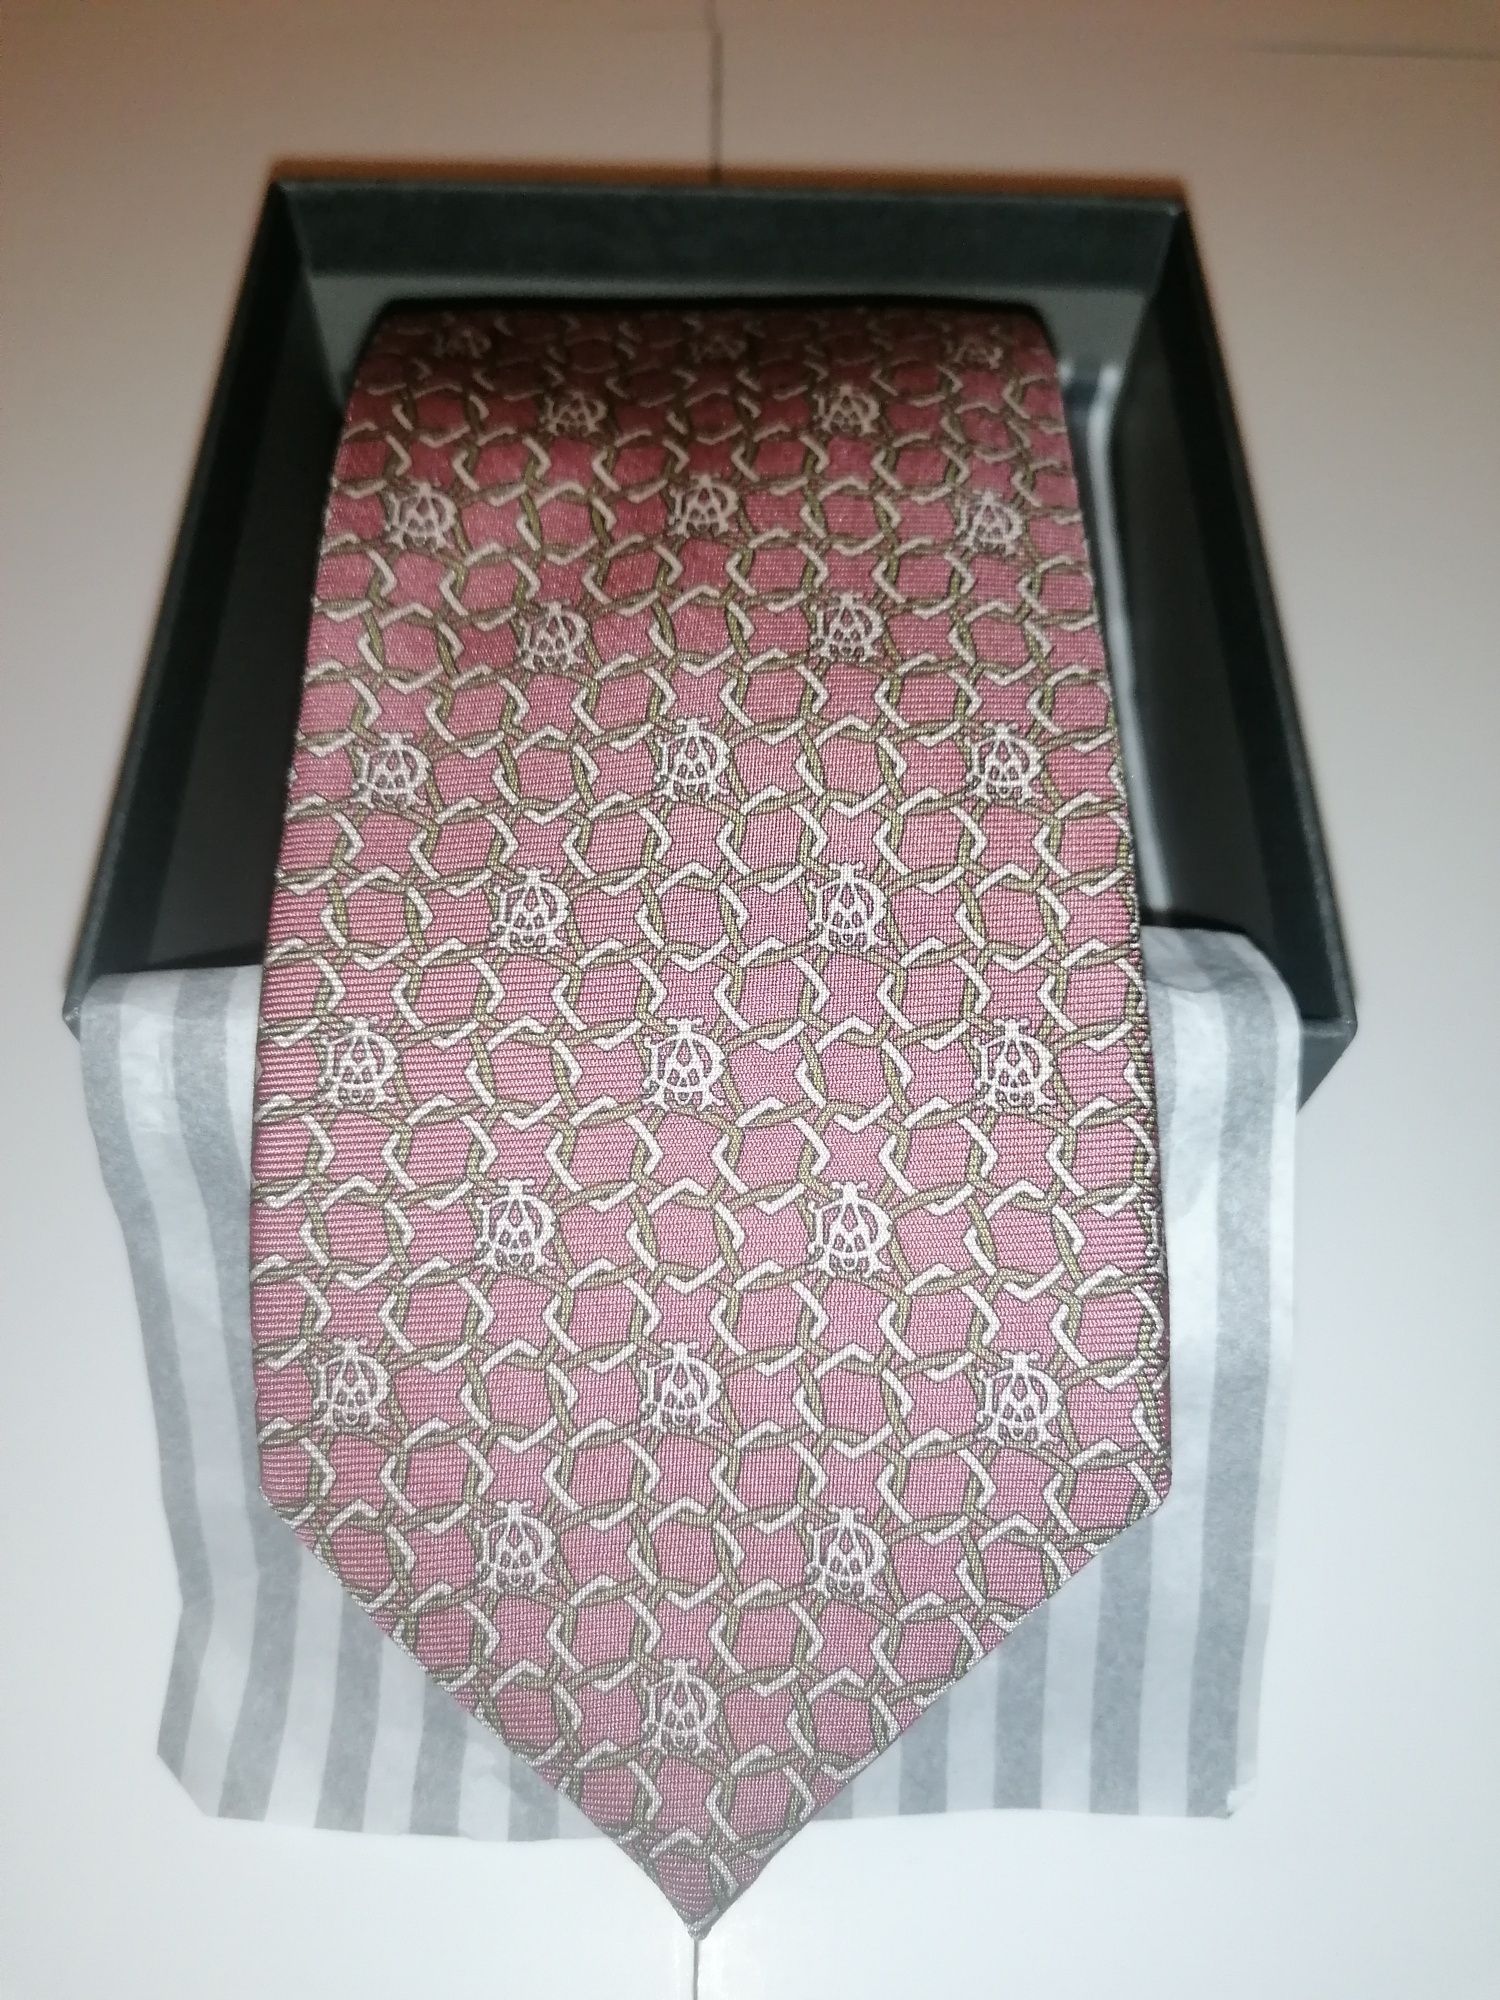 Cravată Dunhill Monogram